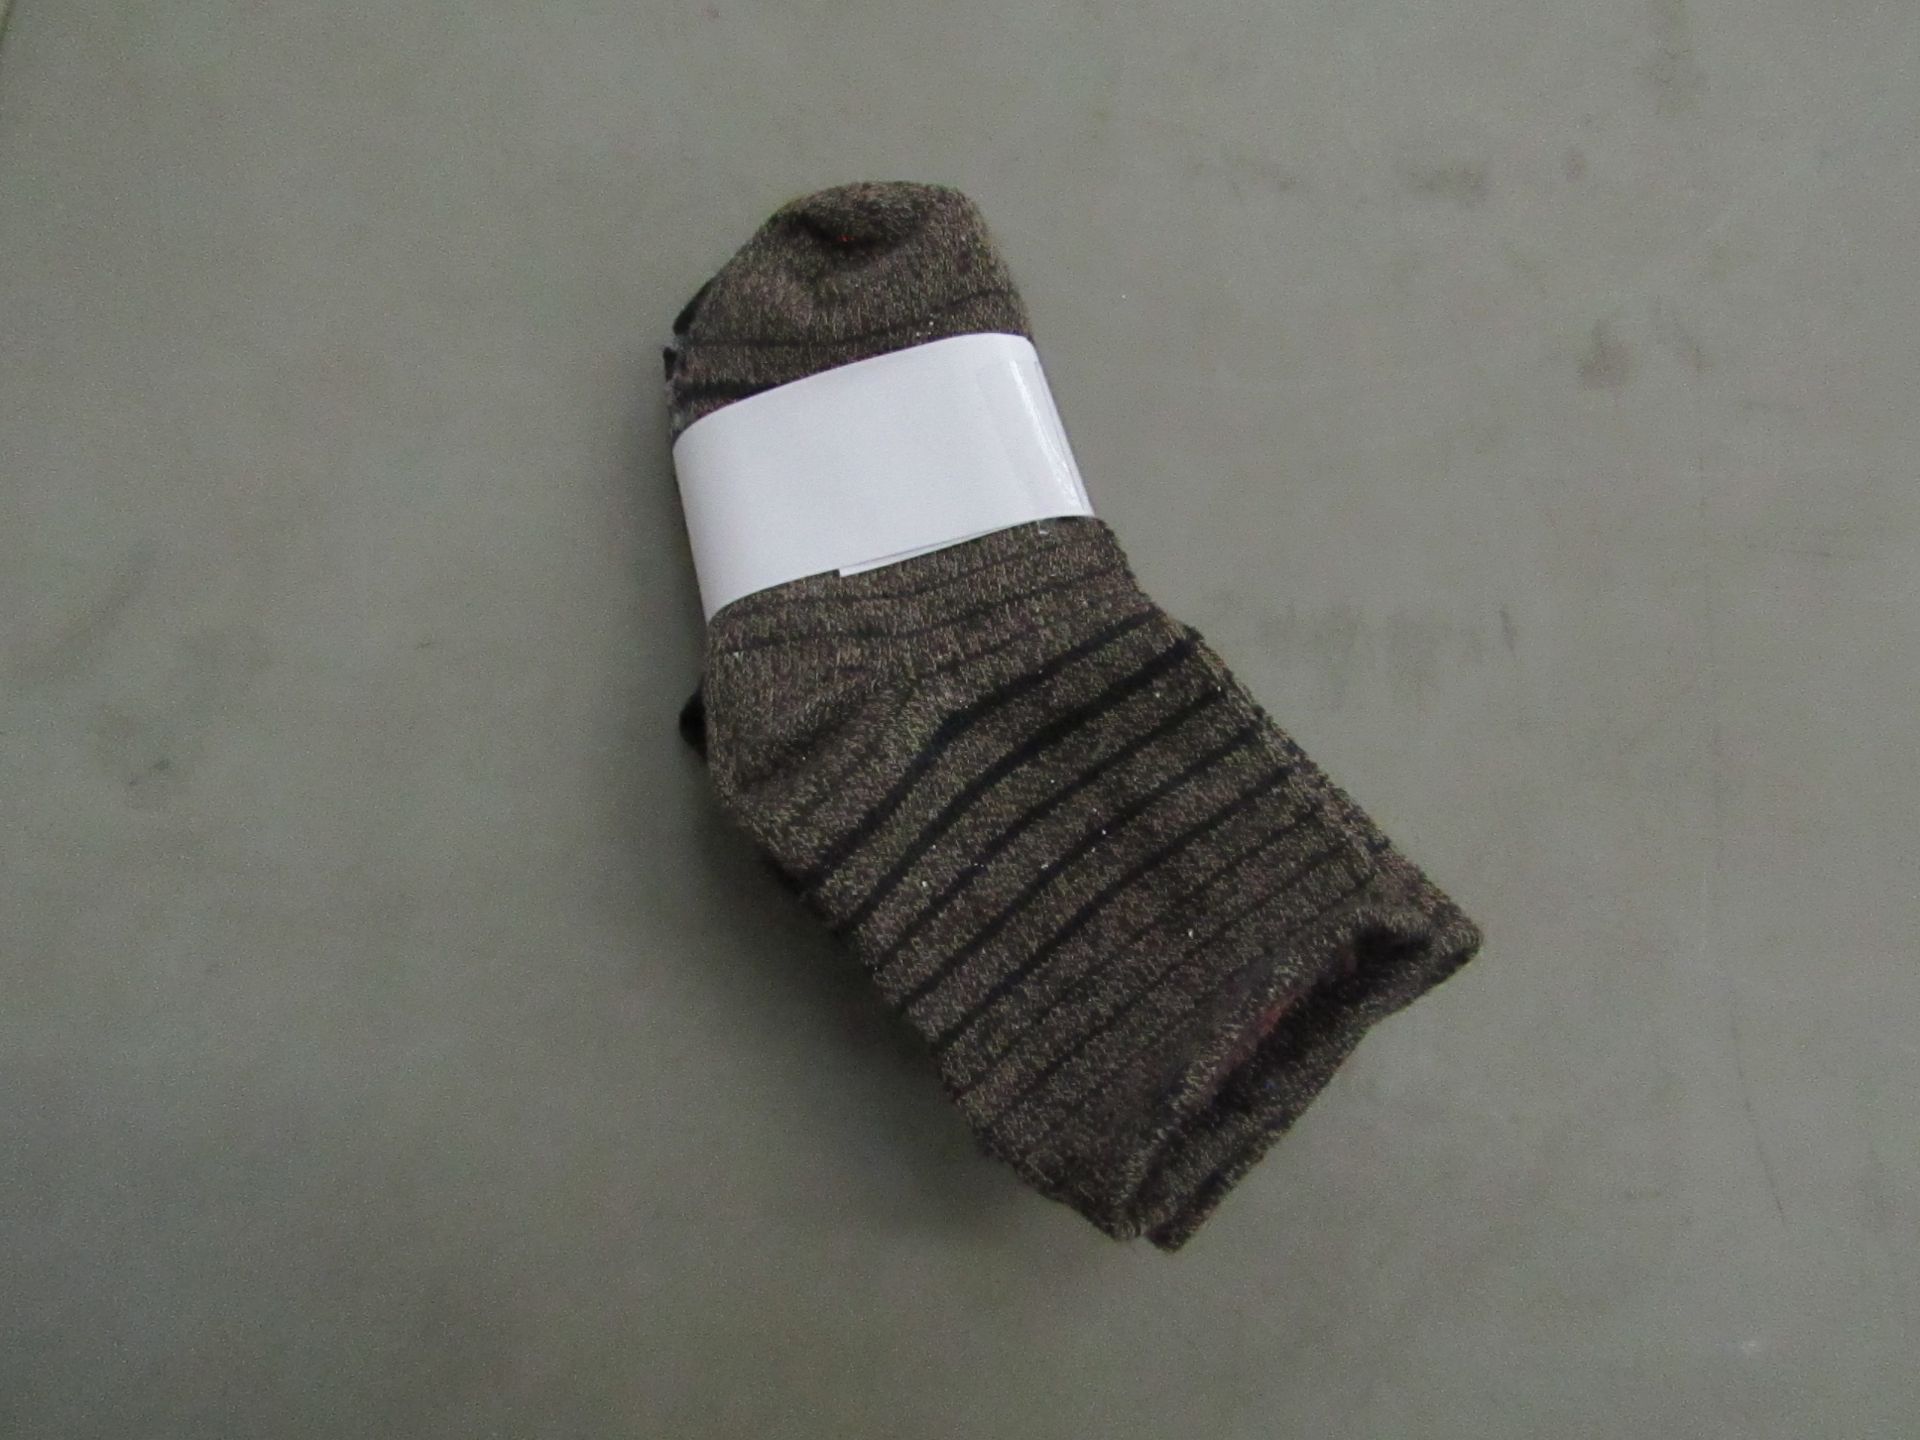 5x Packs of 5 Baby Socks - New.